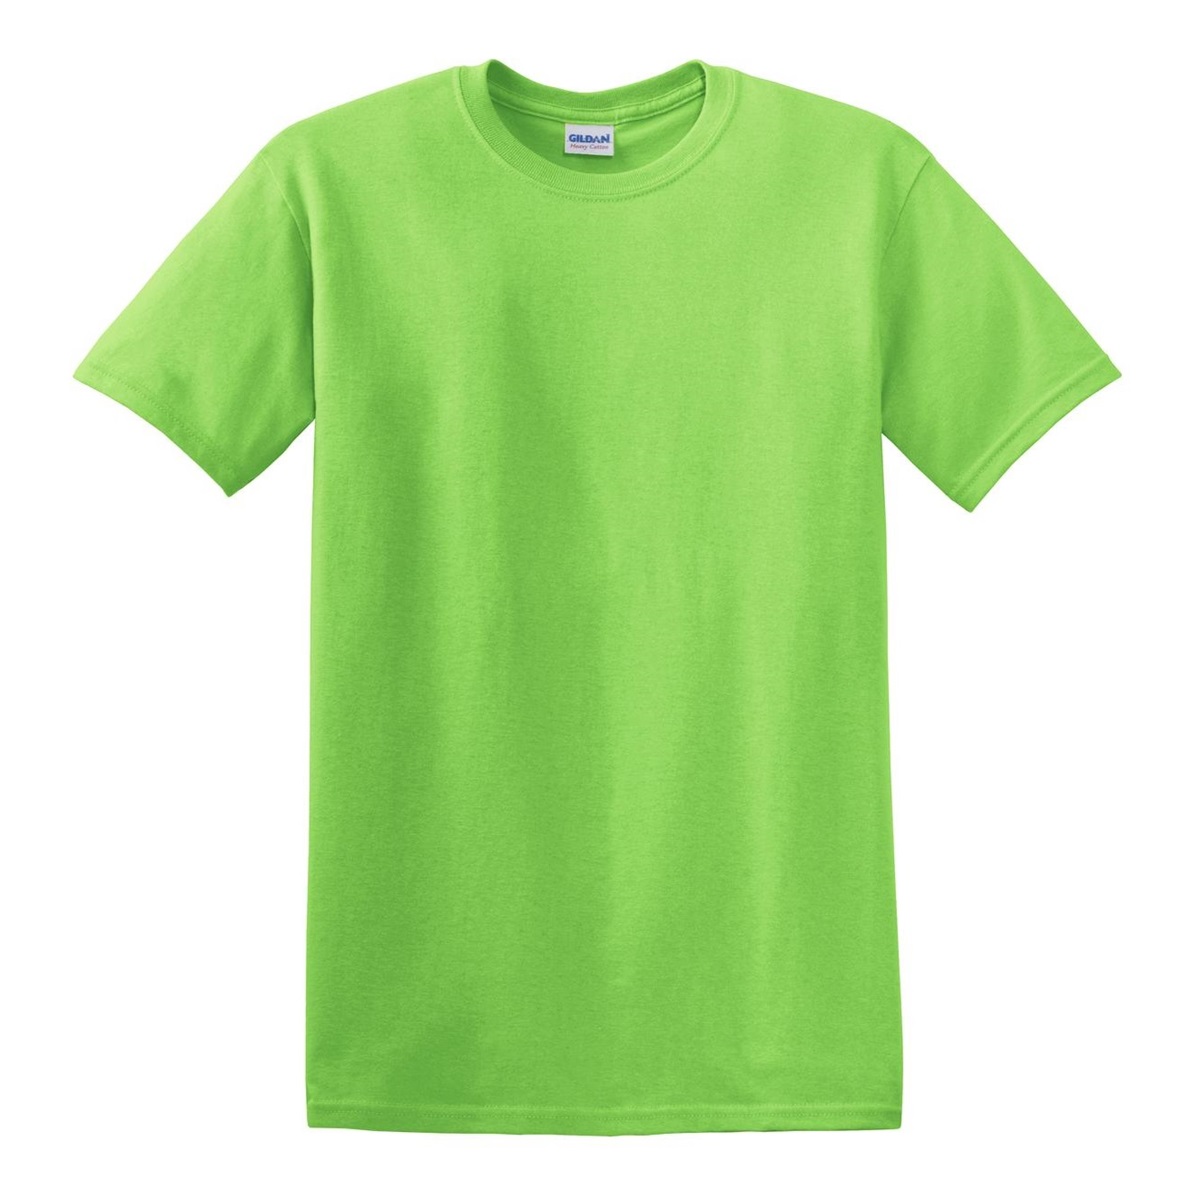 cotton_lime_shirt